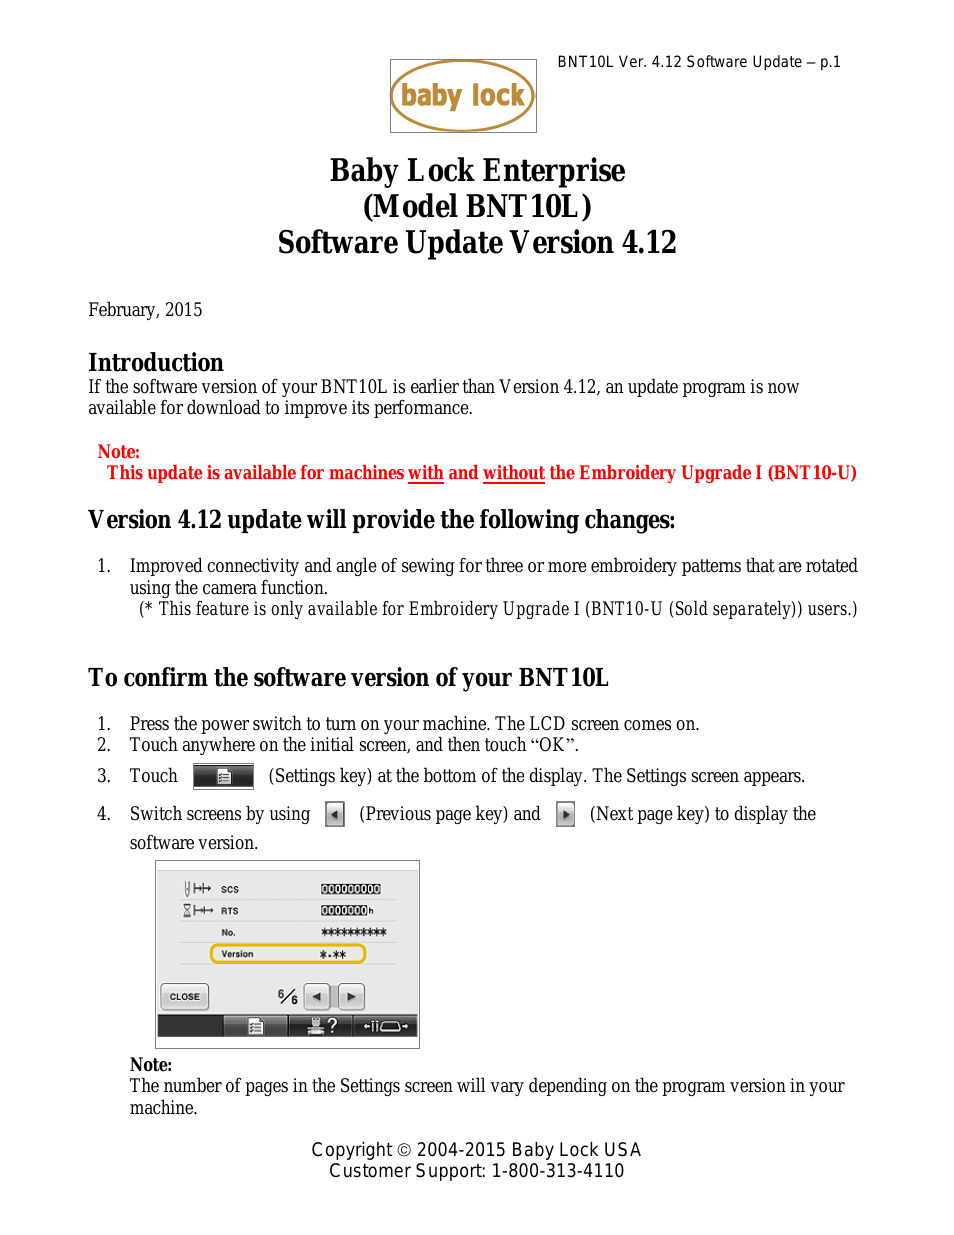 Enterprise (BNT10L) Update Version 4.12 Instructions